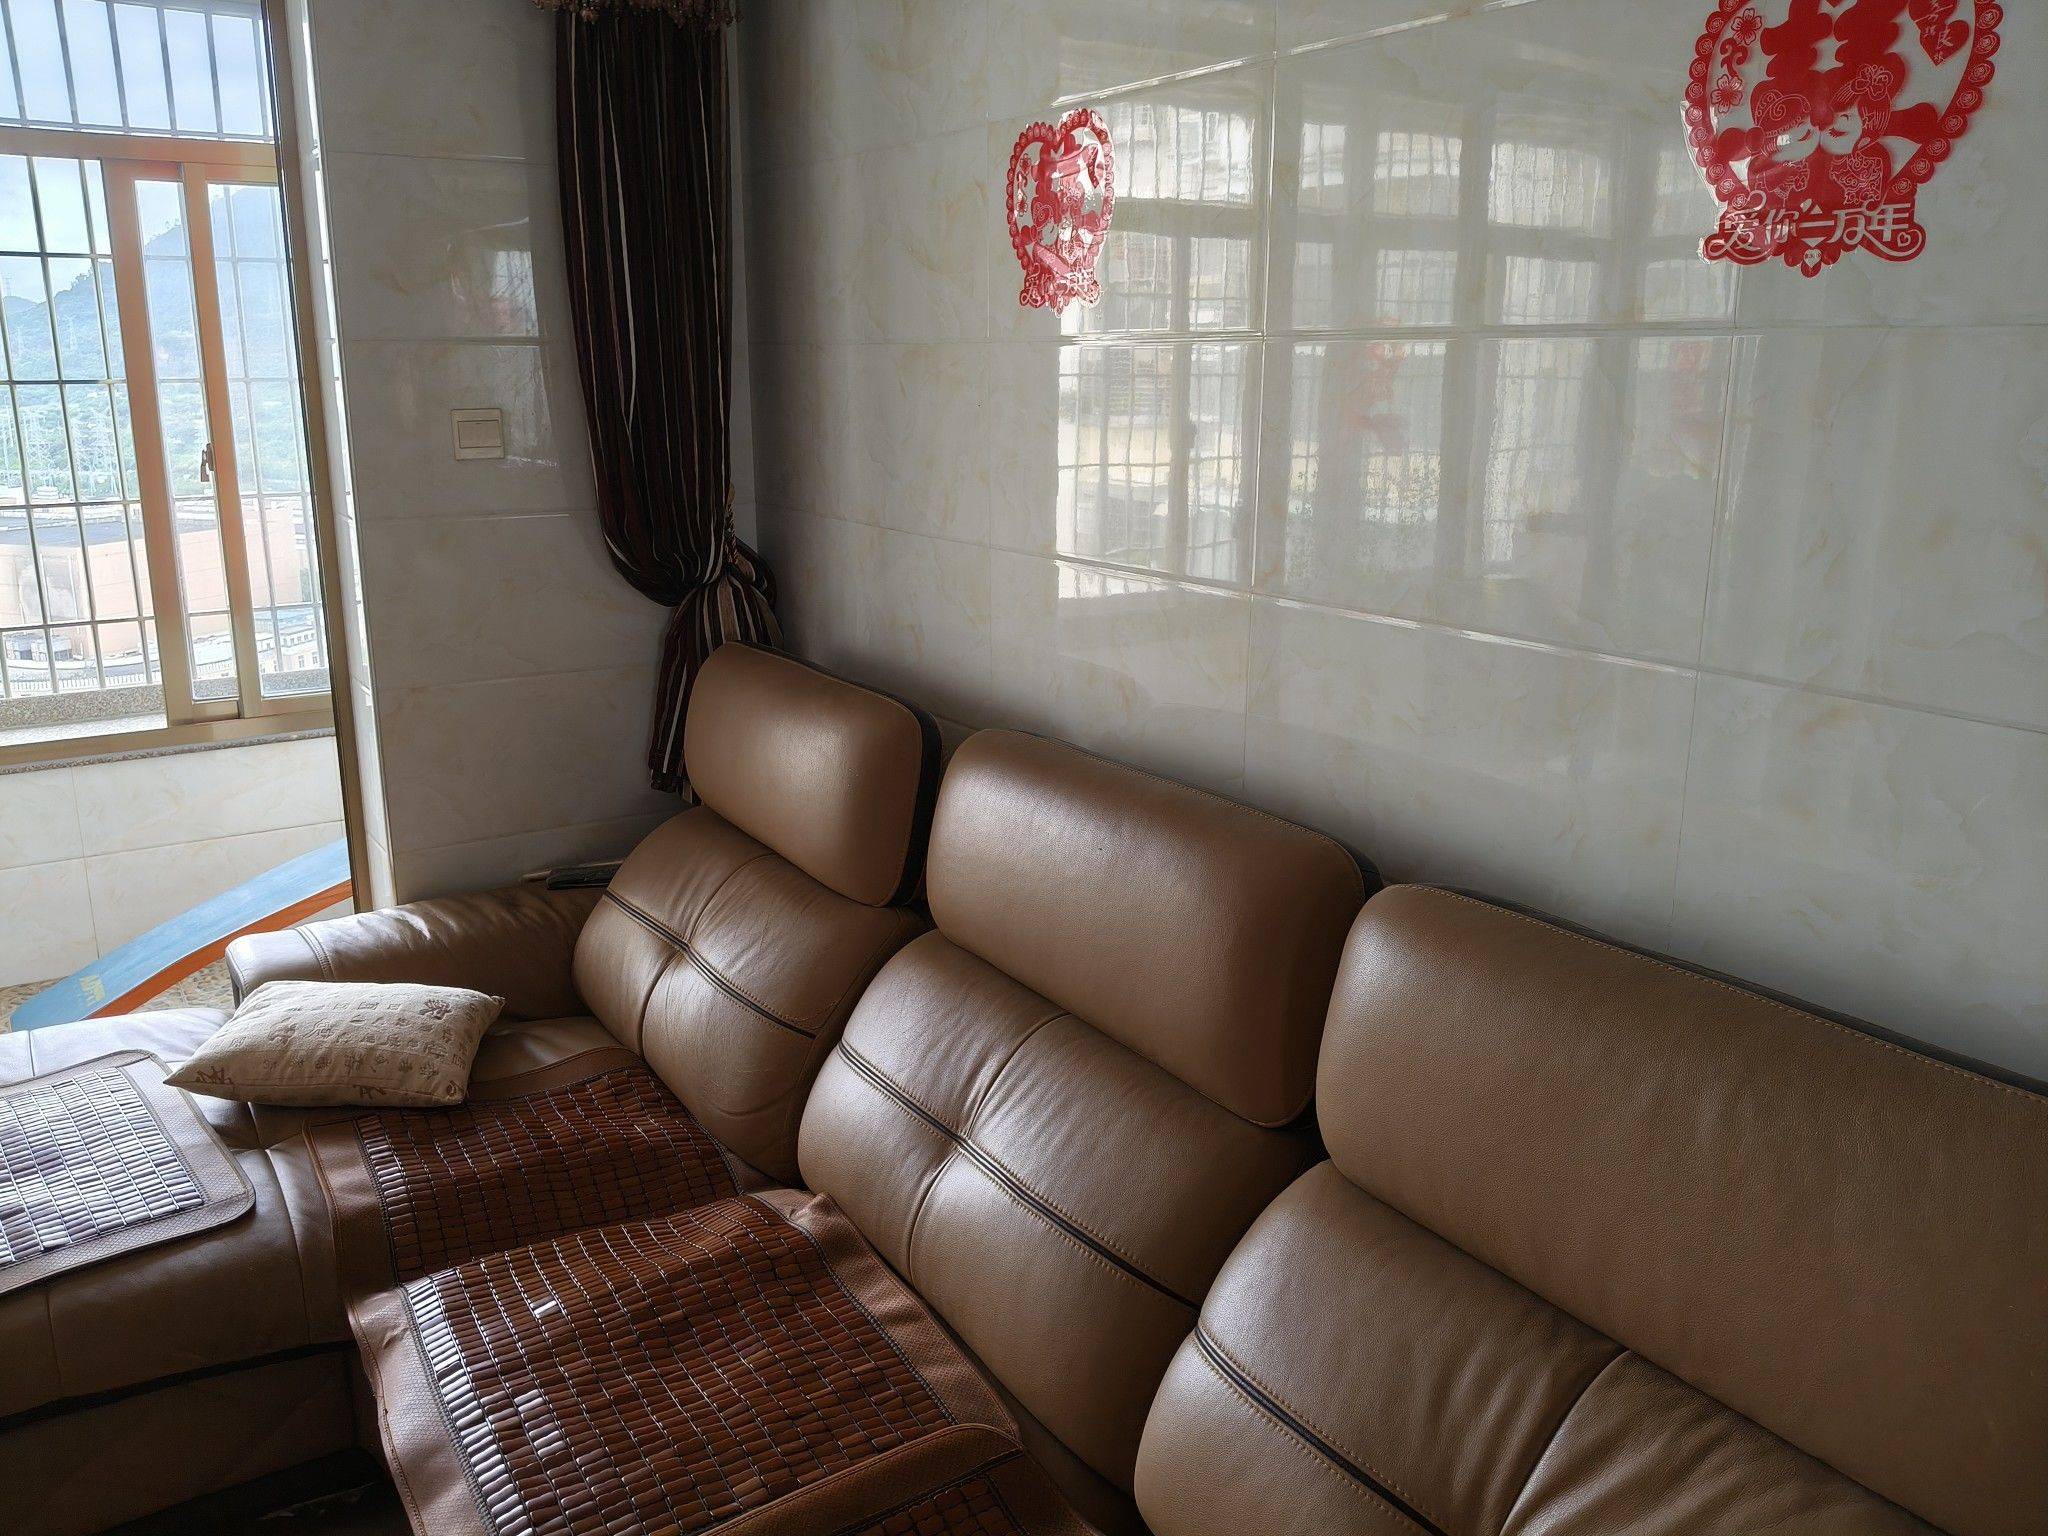 Xiamen-Jimei-Cozy Home,Clean&Comfy,No Gender Limit,Hustle & Bustle,“Friends”,Chilled,LGBTQ Friendly,Pet Friendly